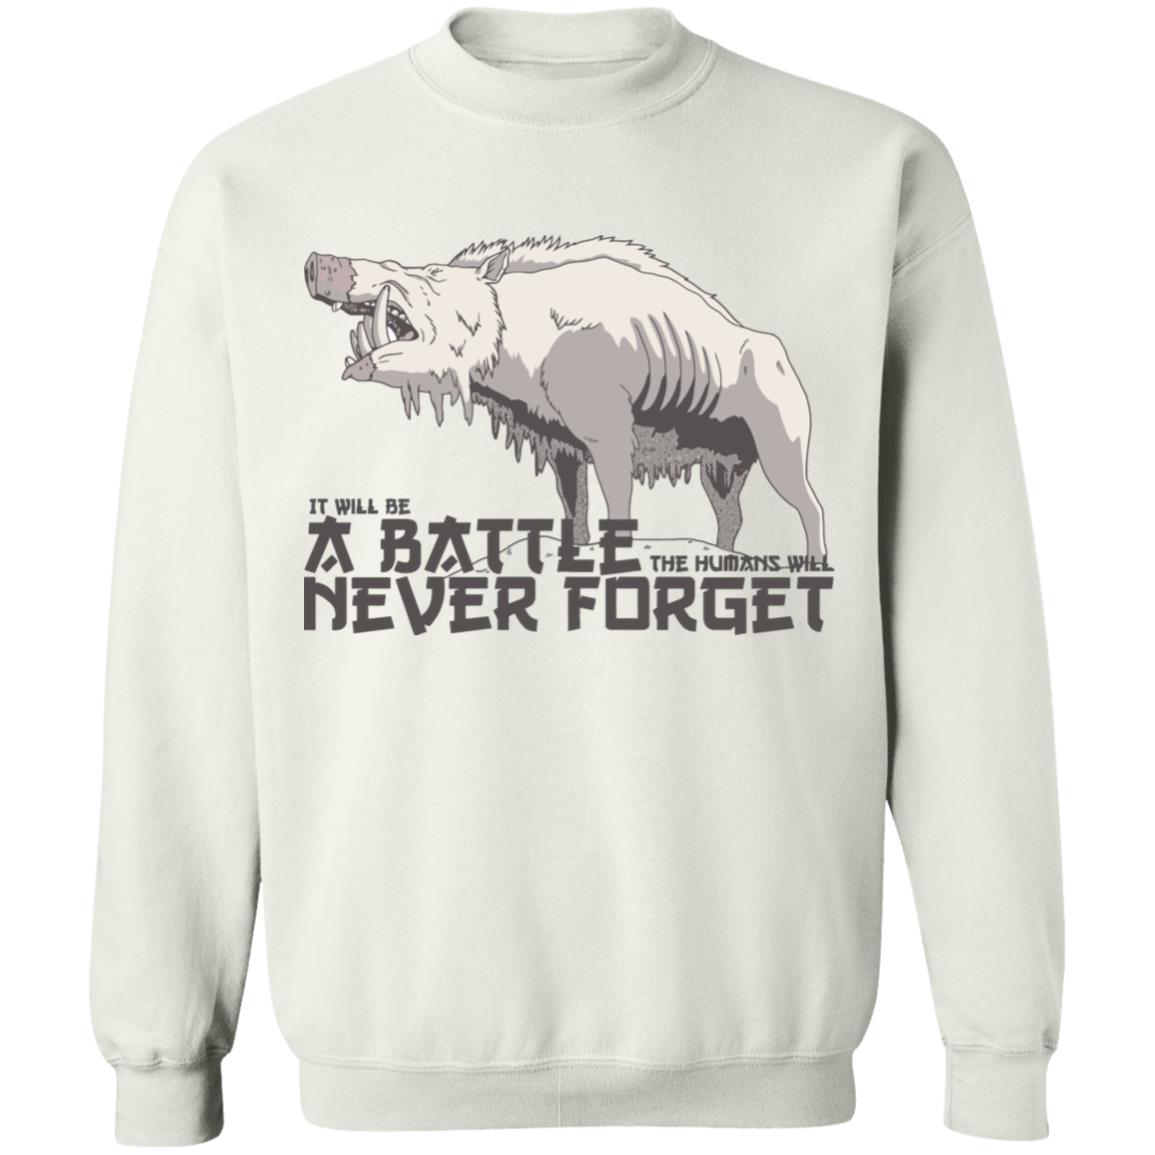 Princess Mononoke – A Battle Never Forget Sweatshirt